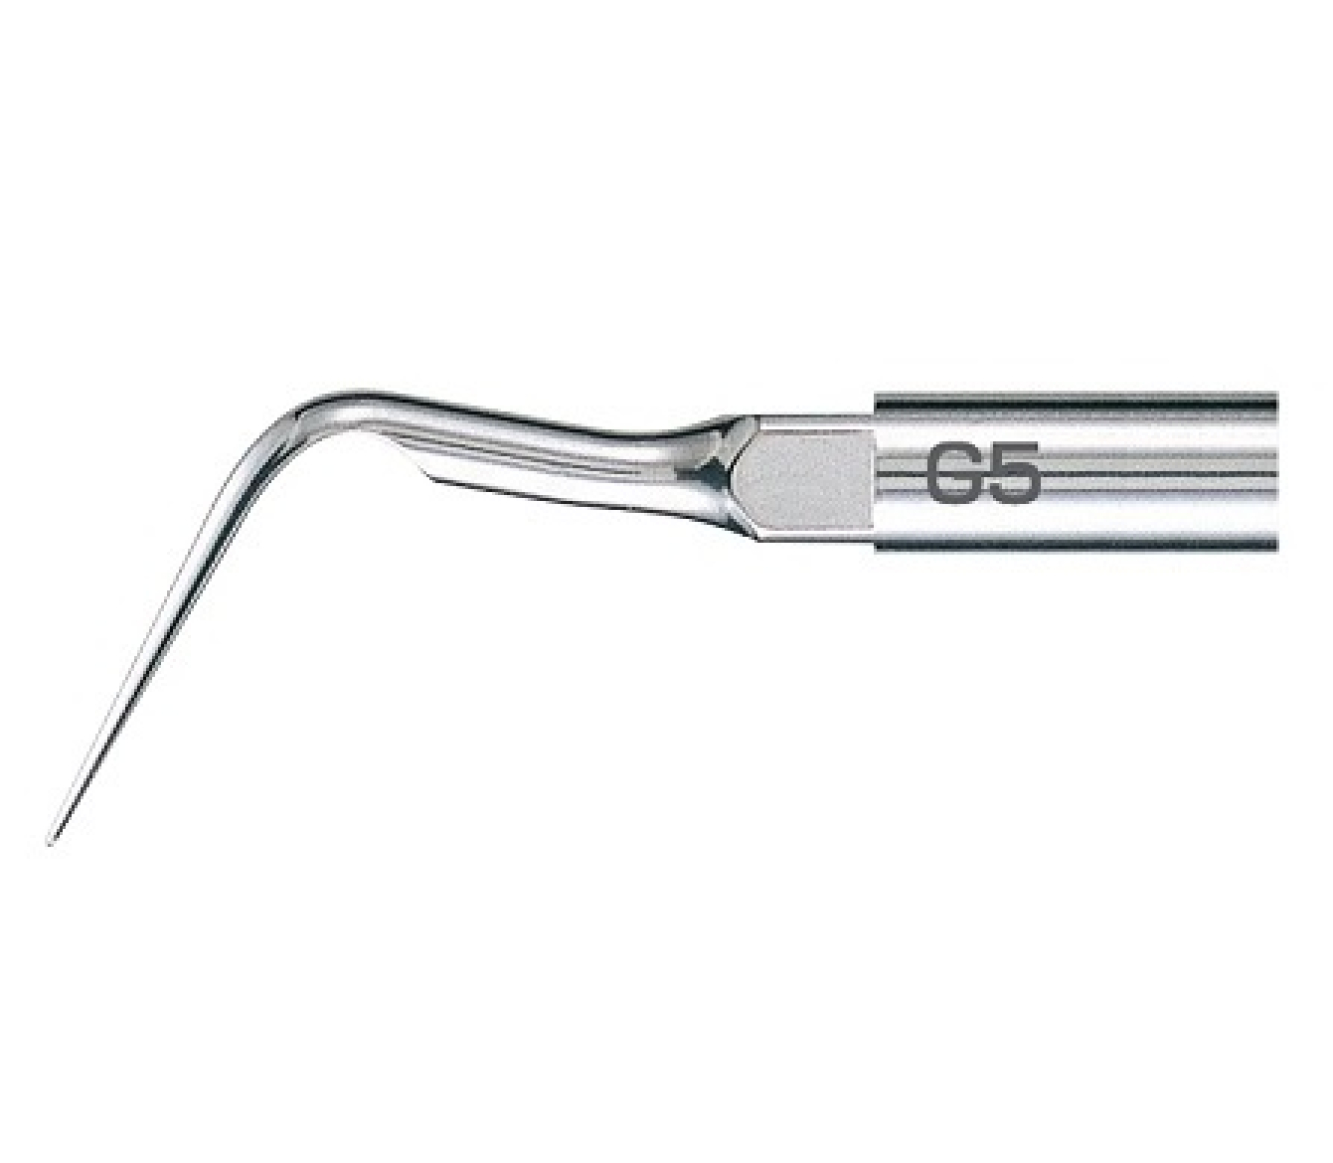 G5 Стоматологическая насадка к скалеру Varios для удаления камня, находящегося в зубодесневых карманах и между зуба, NSK (Япония)